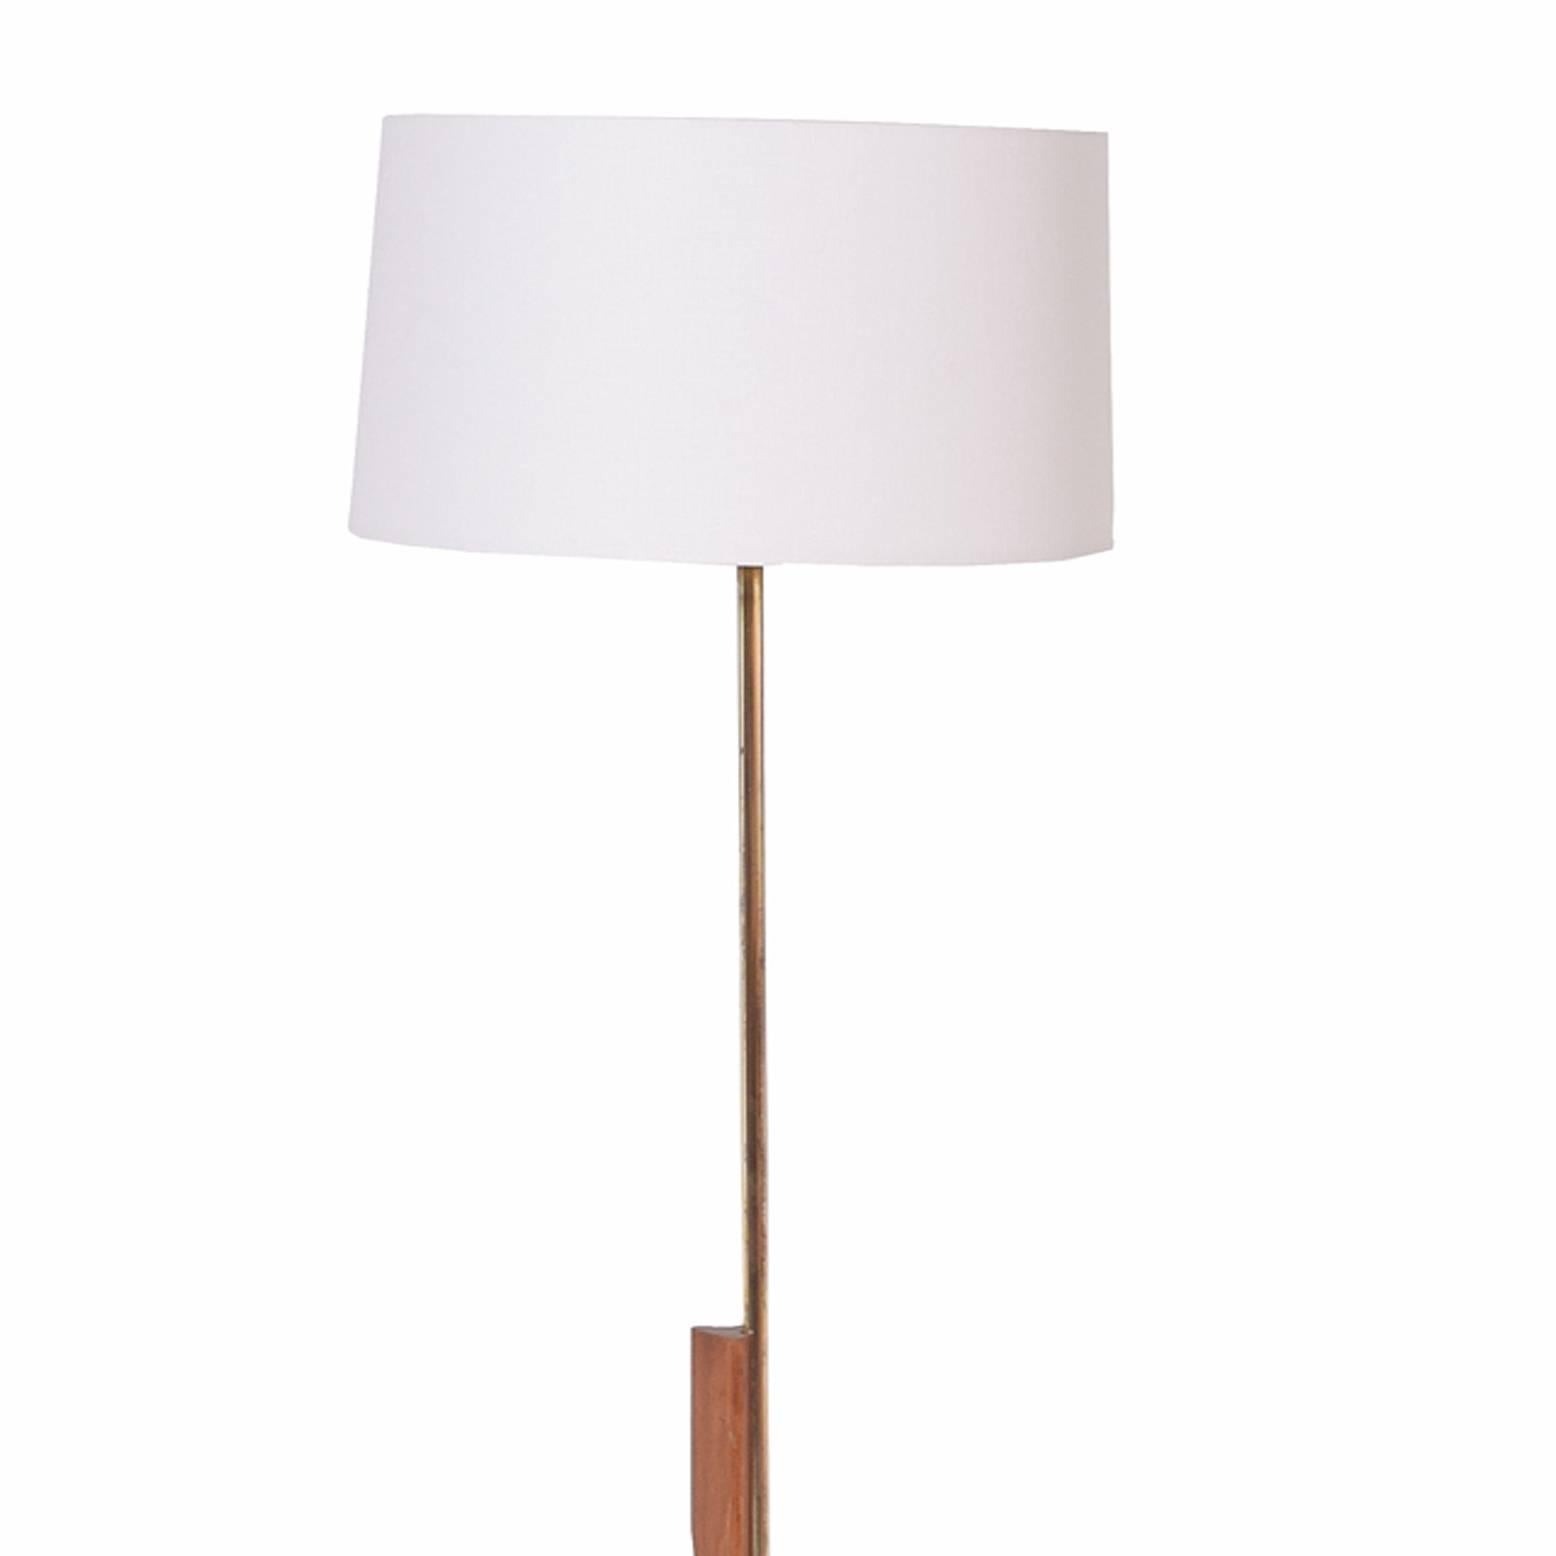 Oak, brass, steel adjustable in height floor lamp design in 1950s new shade.